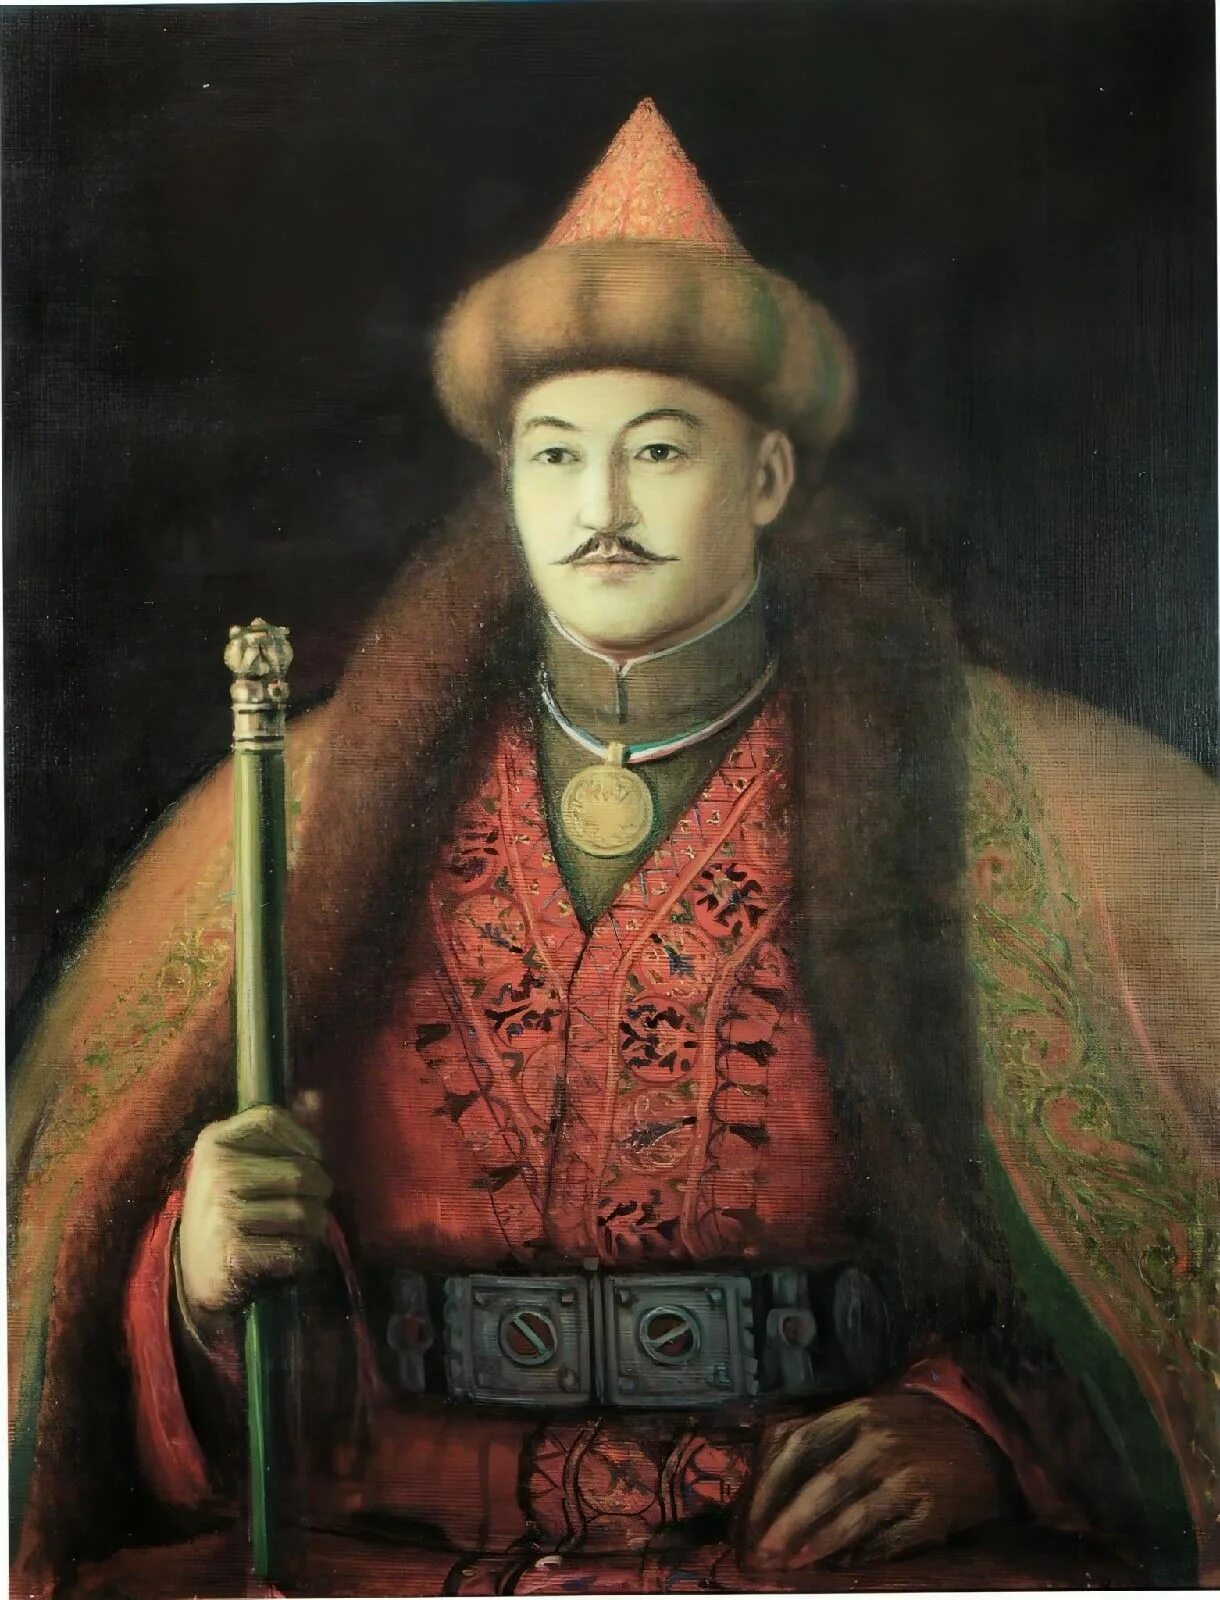 Нұралы хан. Джангир Хан. Жангир-Керей-Хан. Хан 1801 Жангир. Хан Жангир 1629-1652 гг.